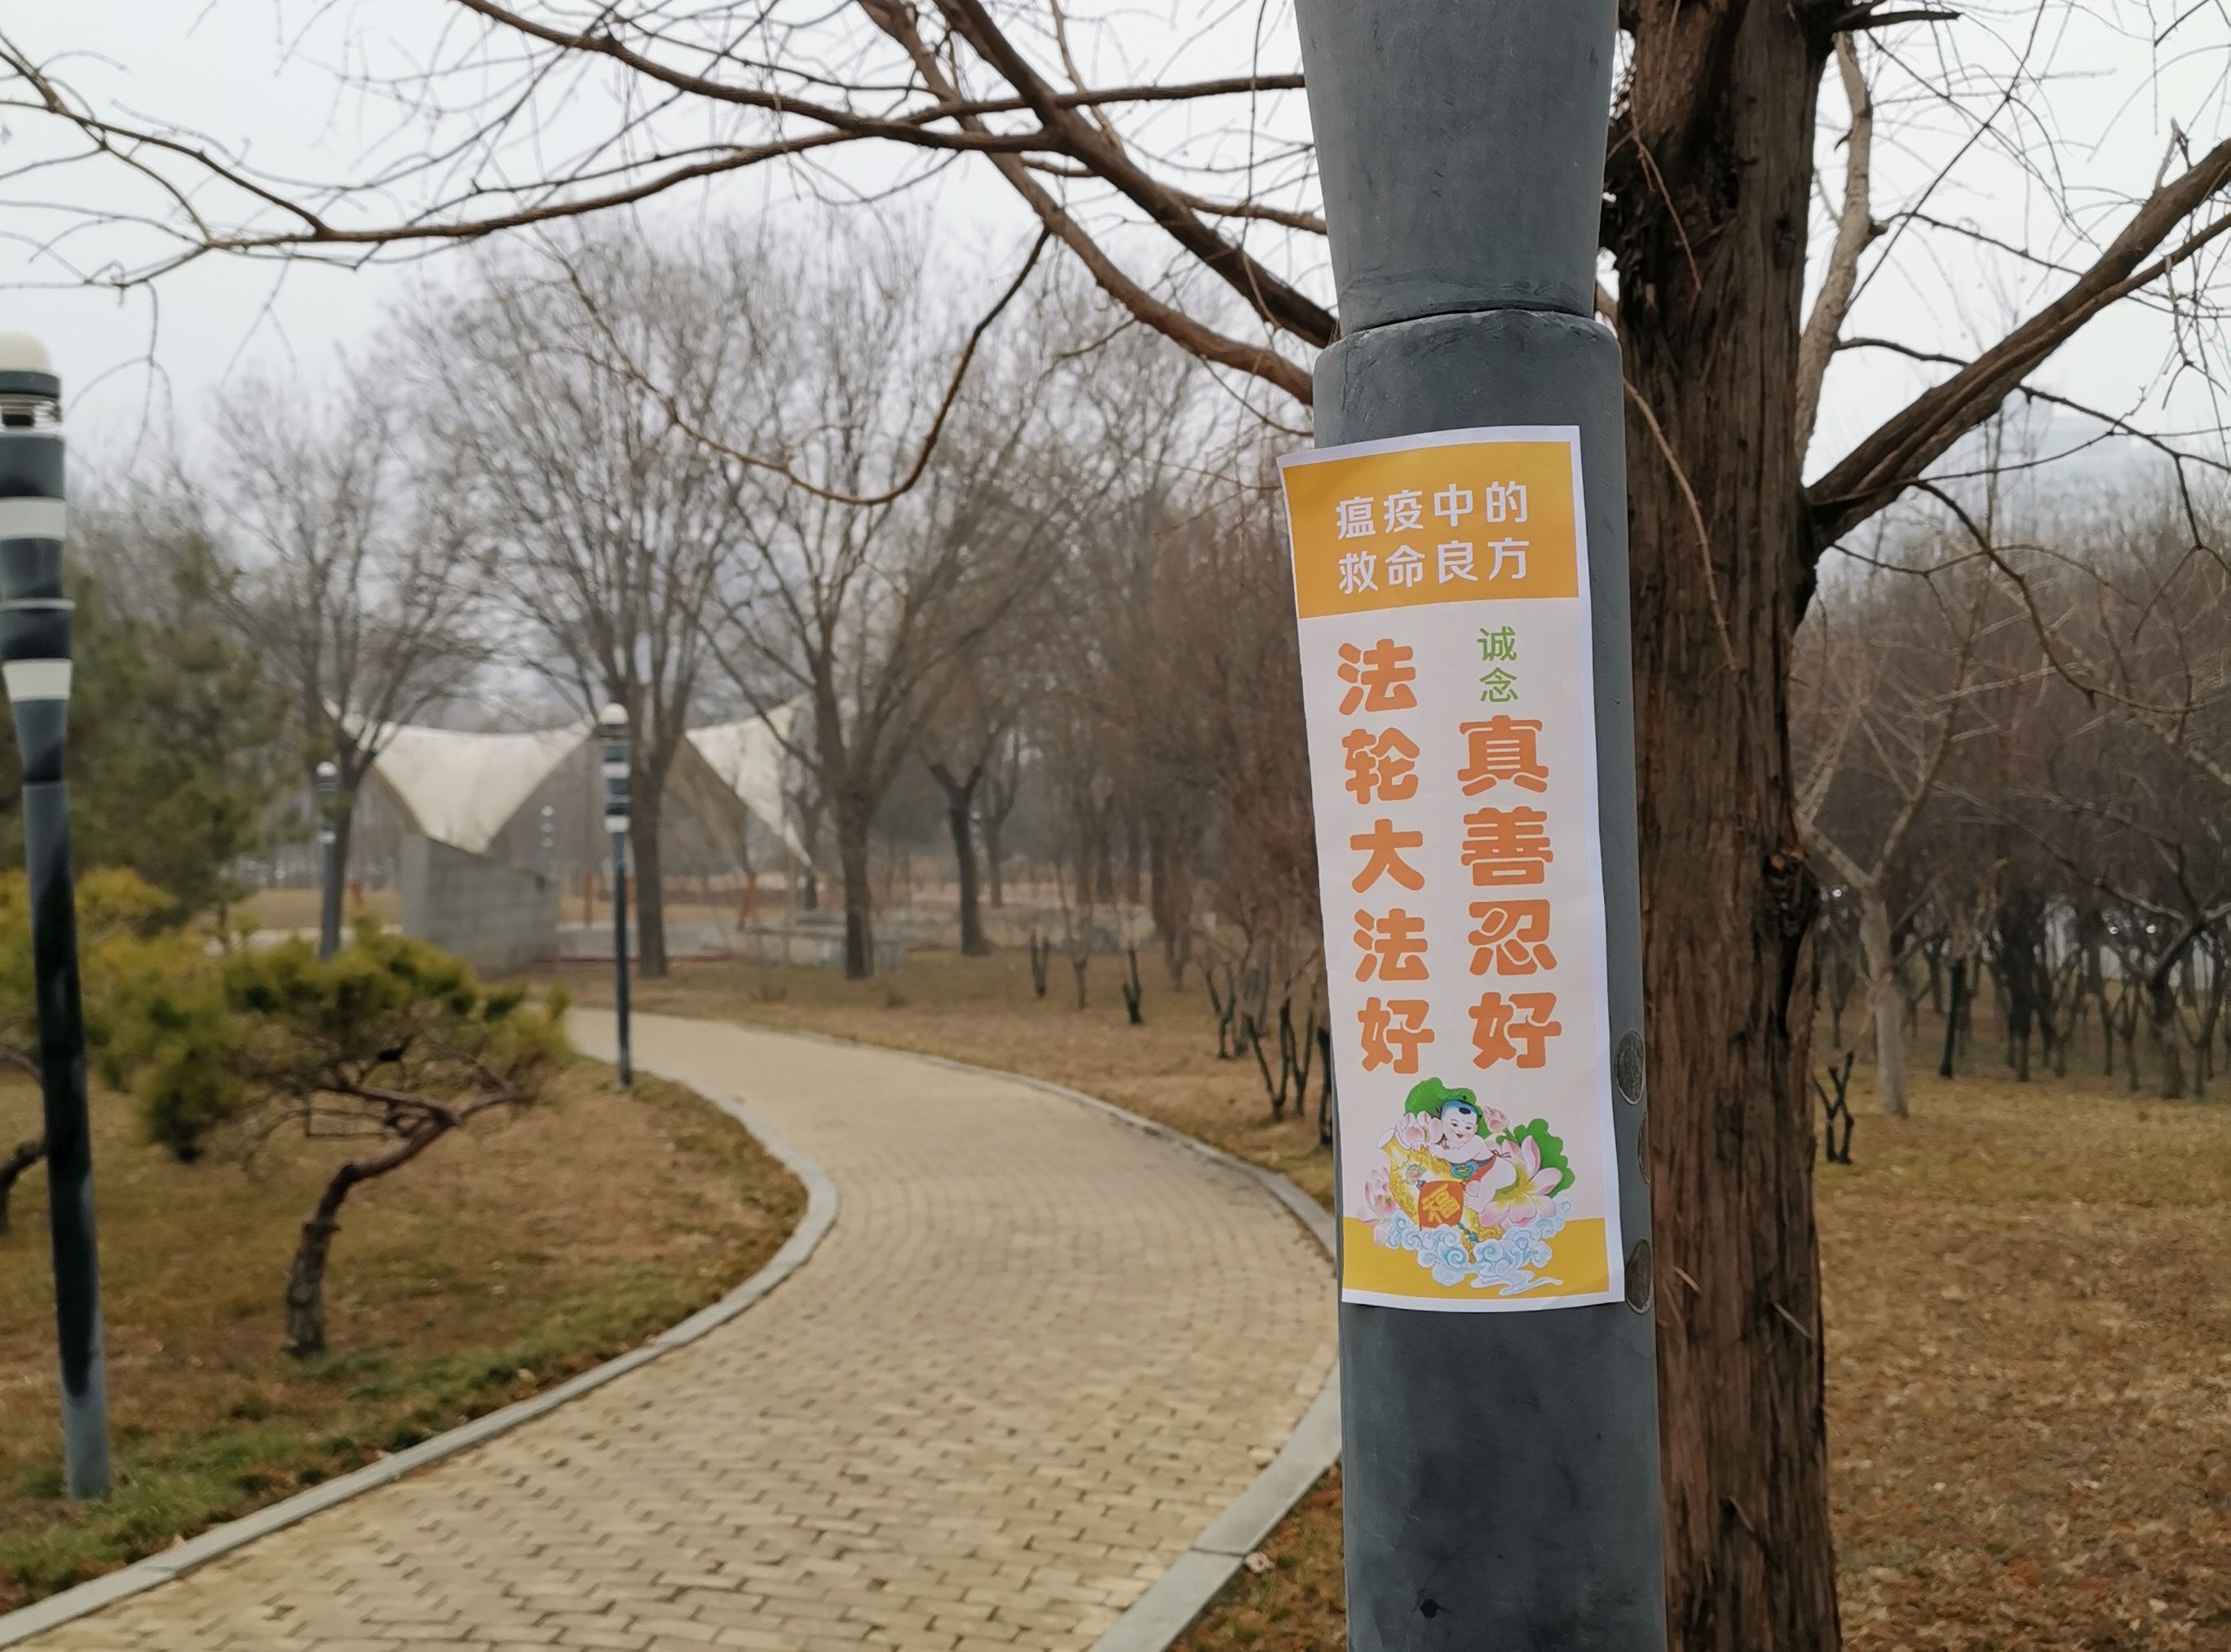 中國大陸法輪功學員用真相貼傳播避疫良方